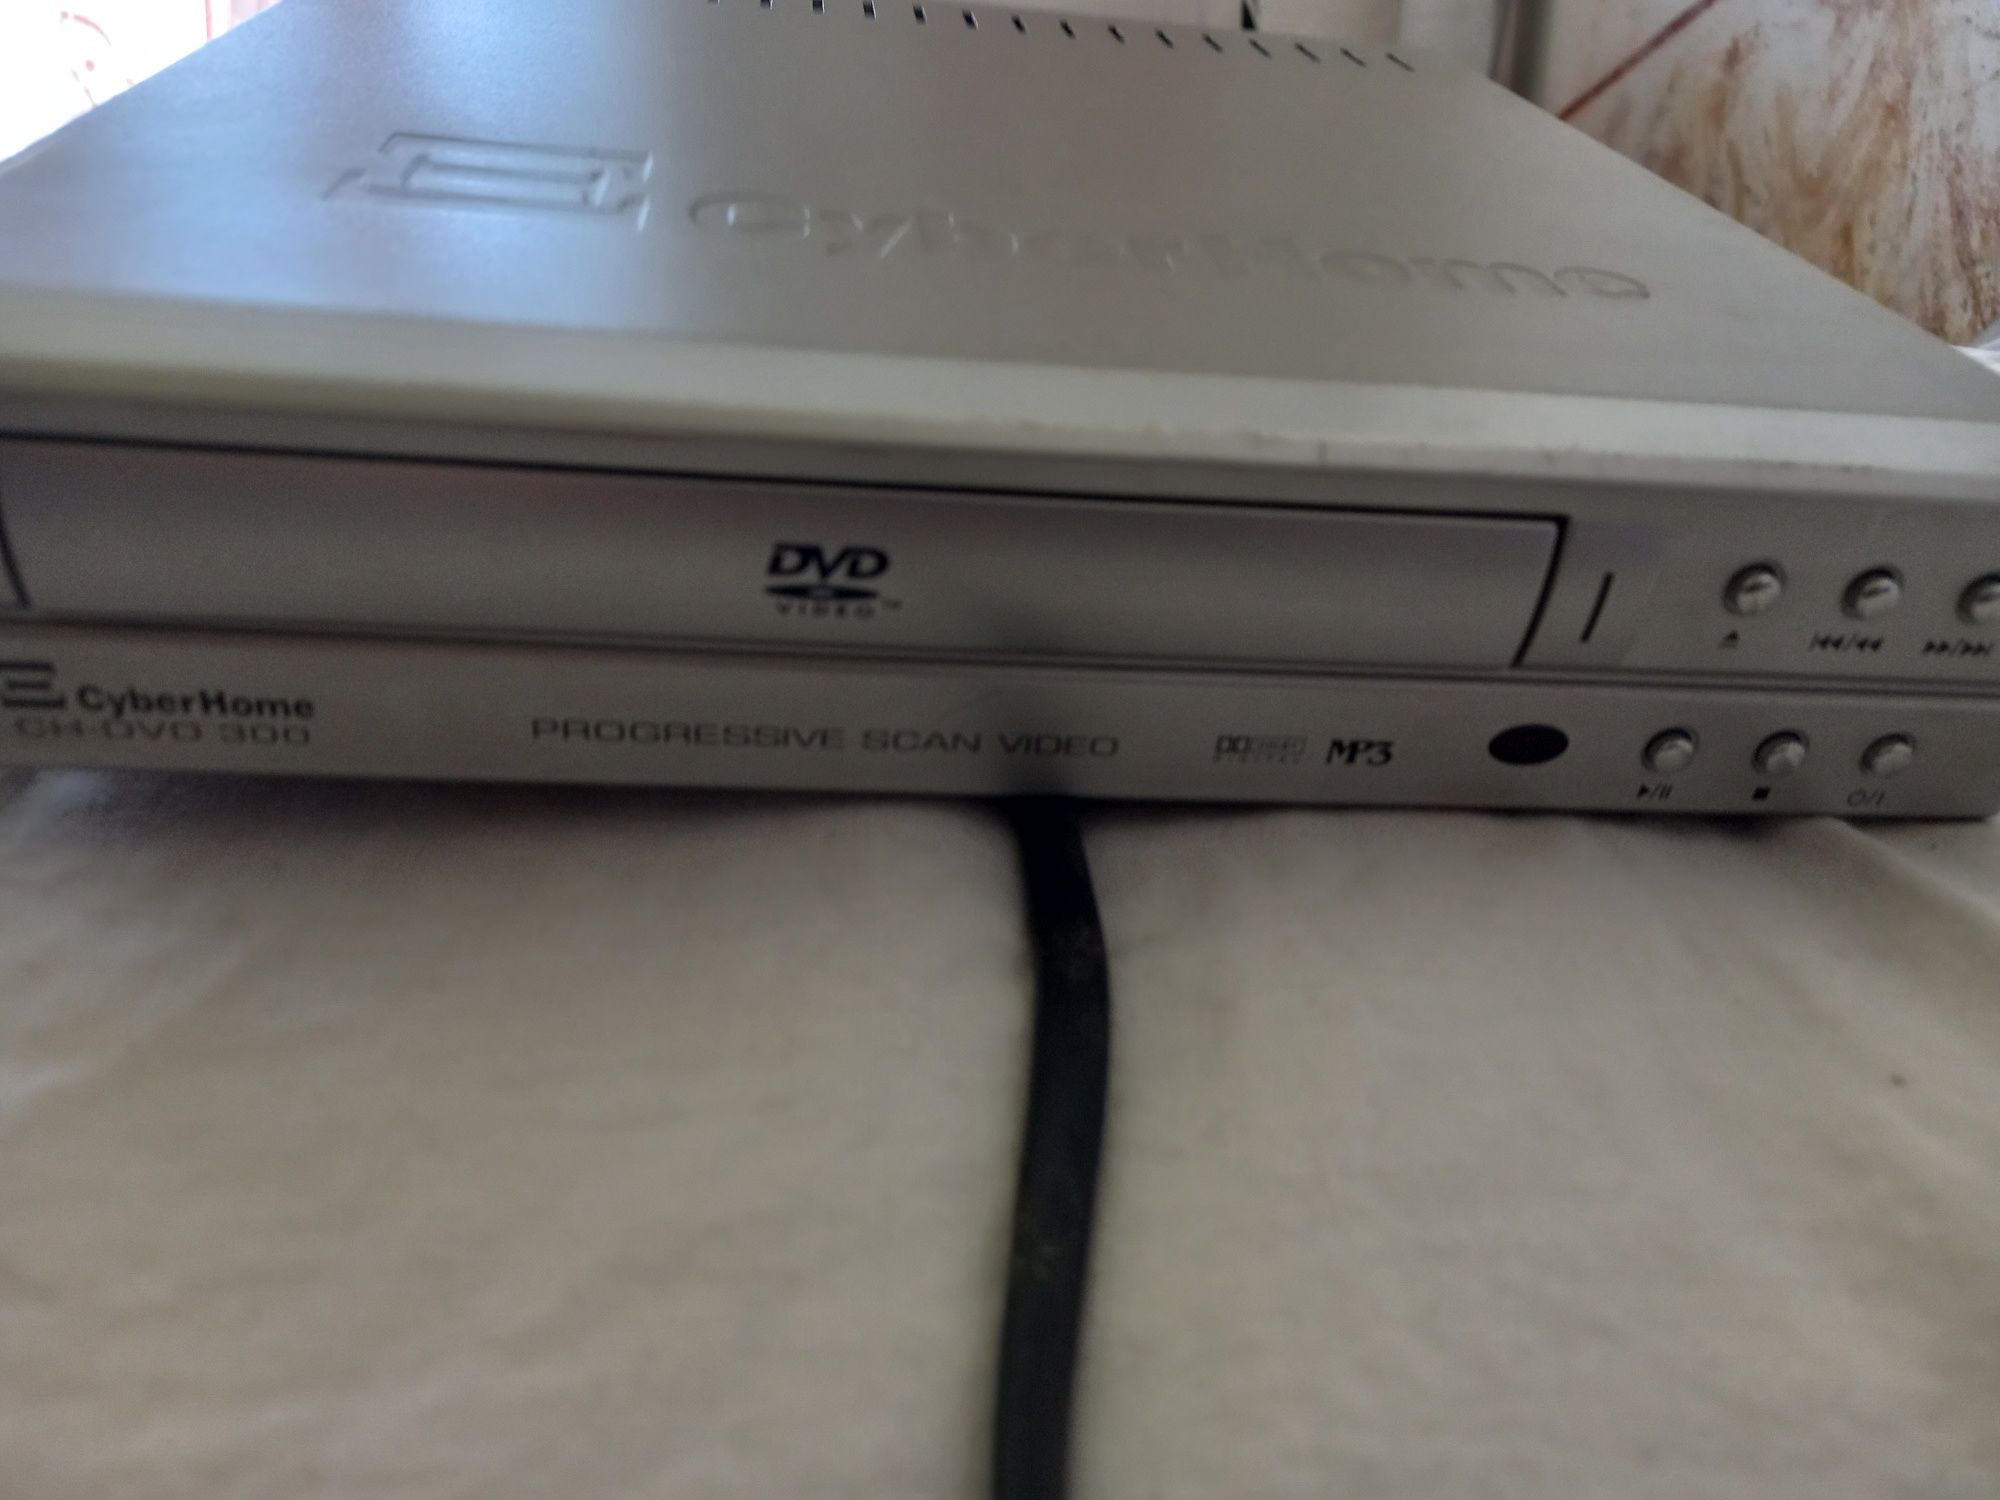  CyberHome CH-DVD 300S Progressive-Scan DVD Player